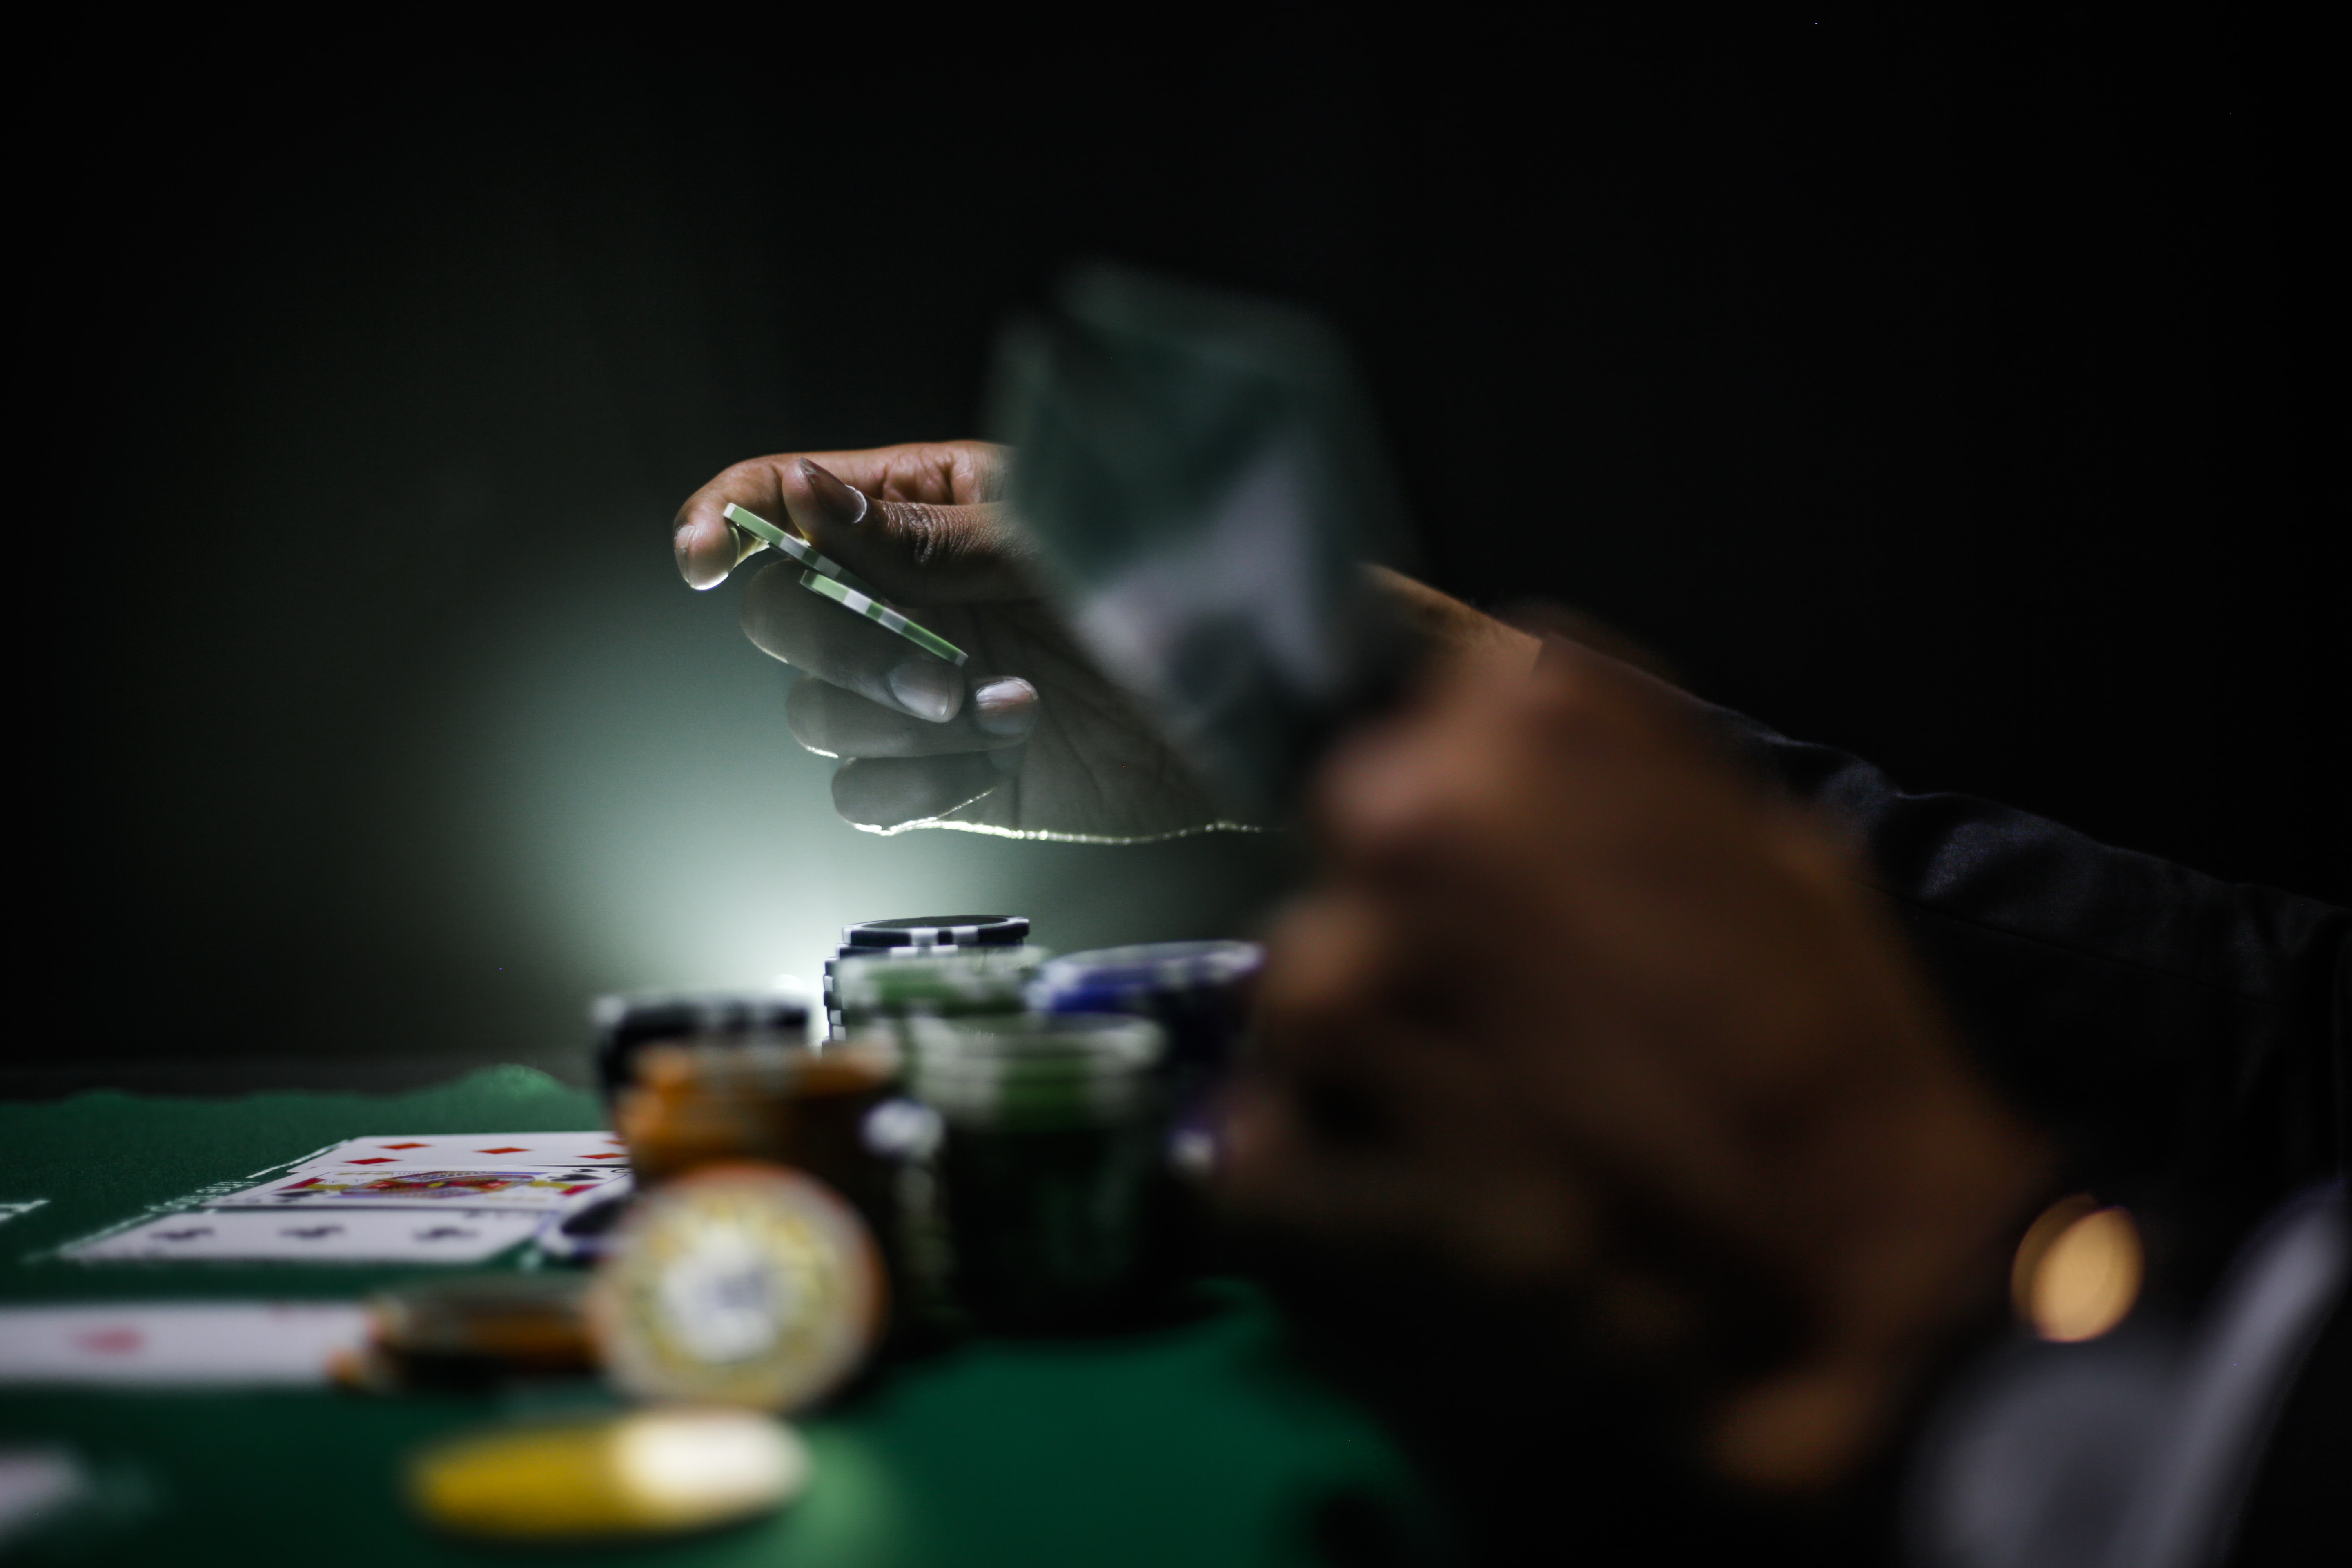 Bereicherungsrecht: 92.000 Euro nach falscher Überweisung im Casino und Bordell verprasst – entreichert?